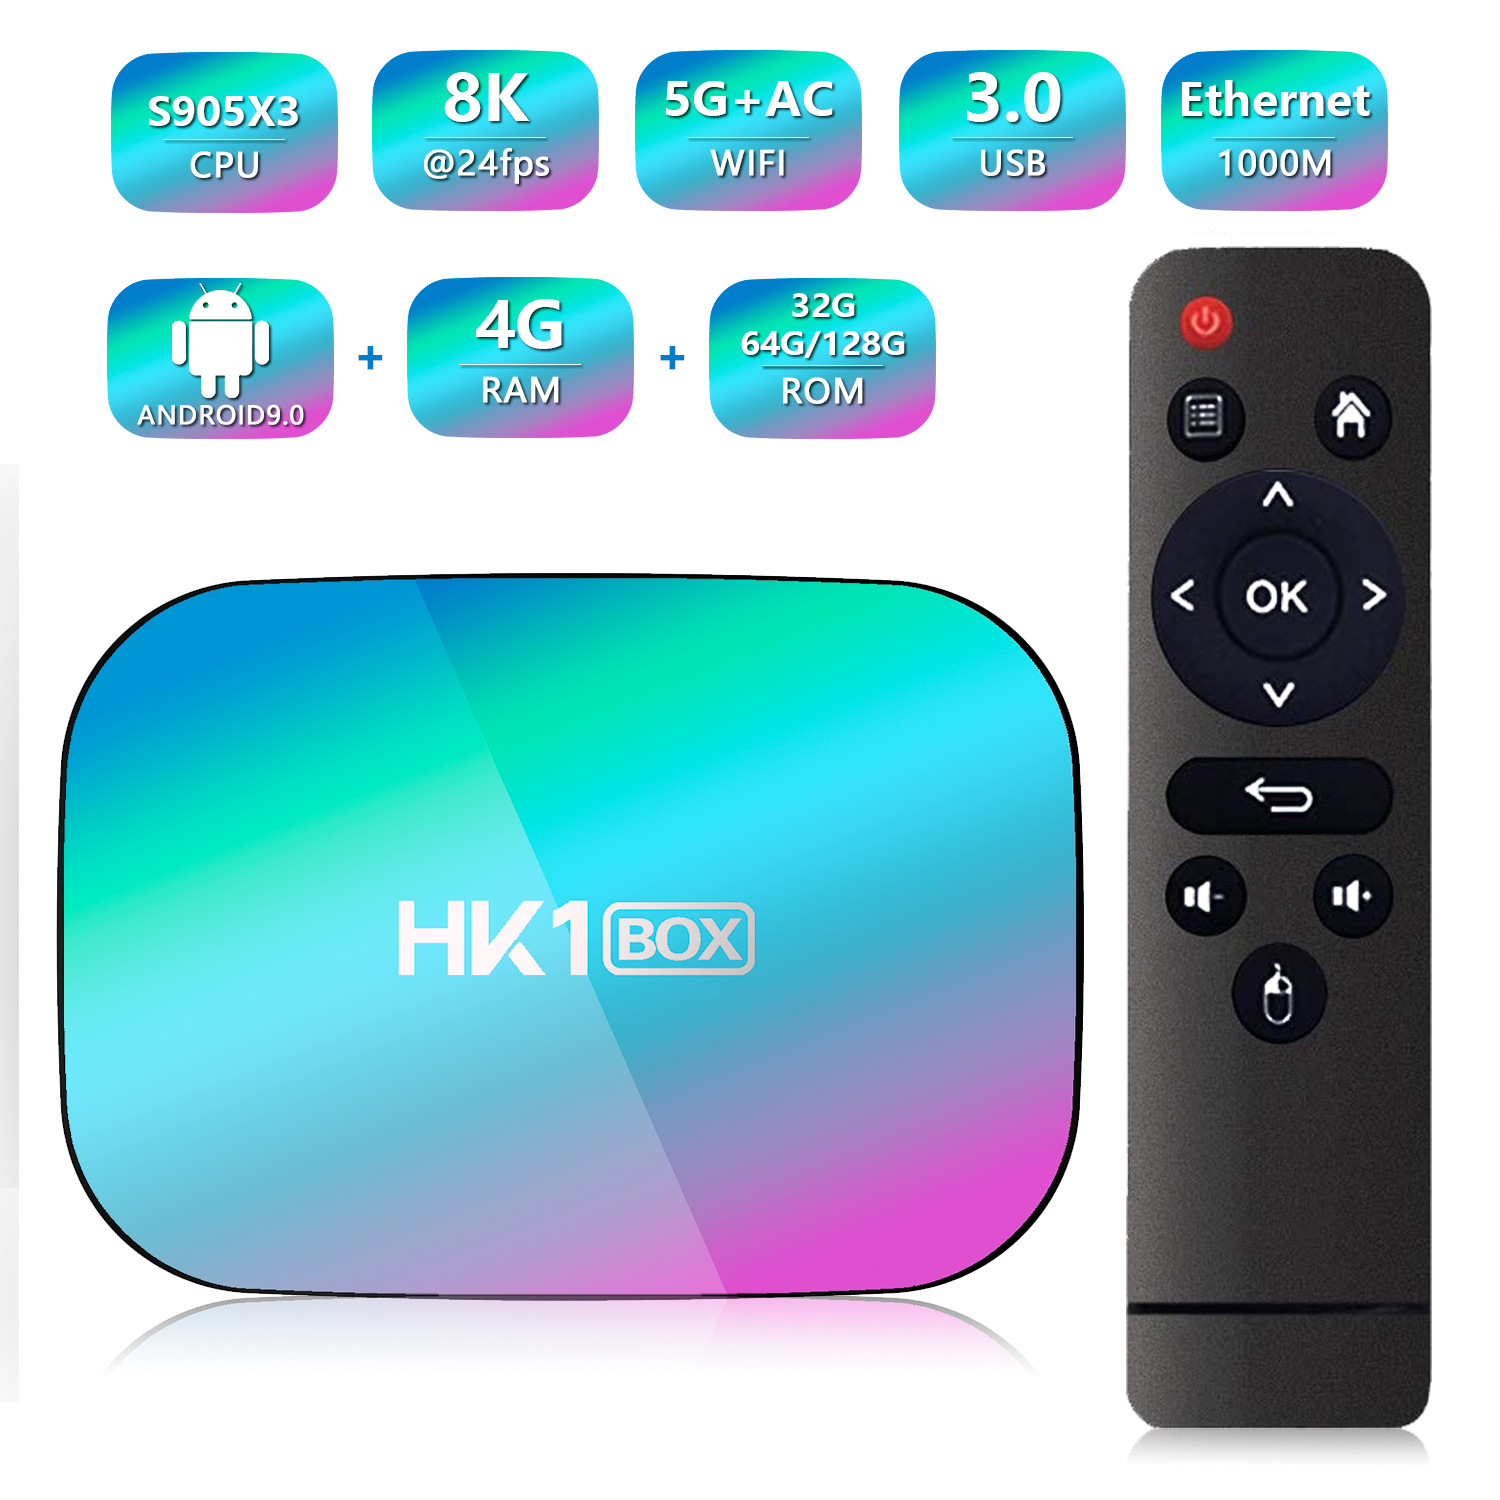 HK1 BOX 机顶盒 S905X3 安卓9.0 TV BOX 网络播放器双频 WIFI+BT详情2